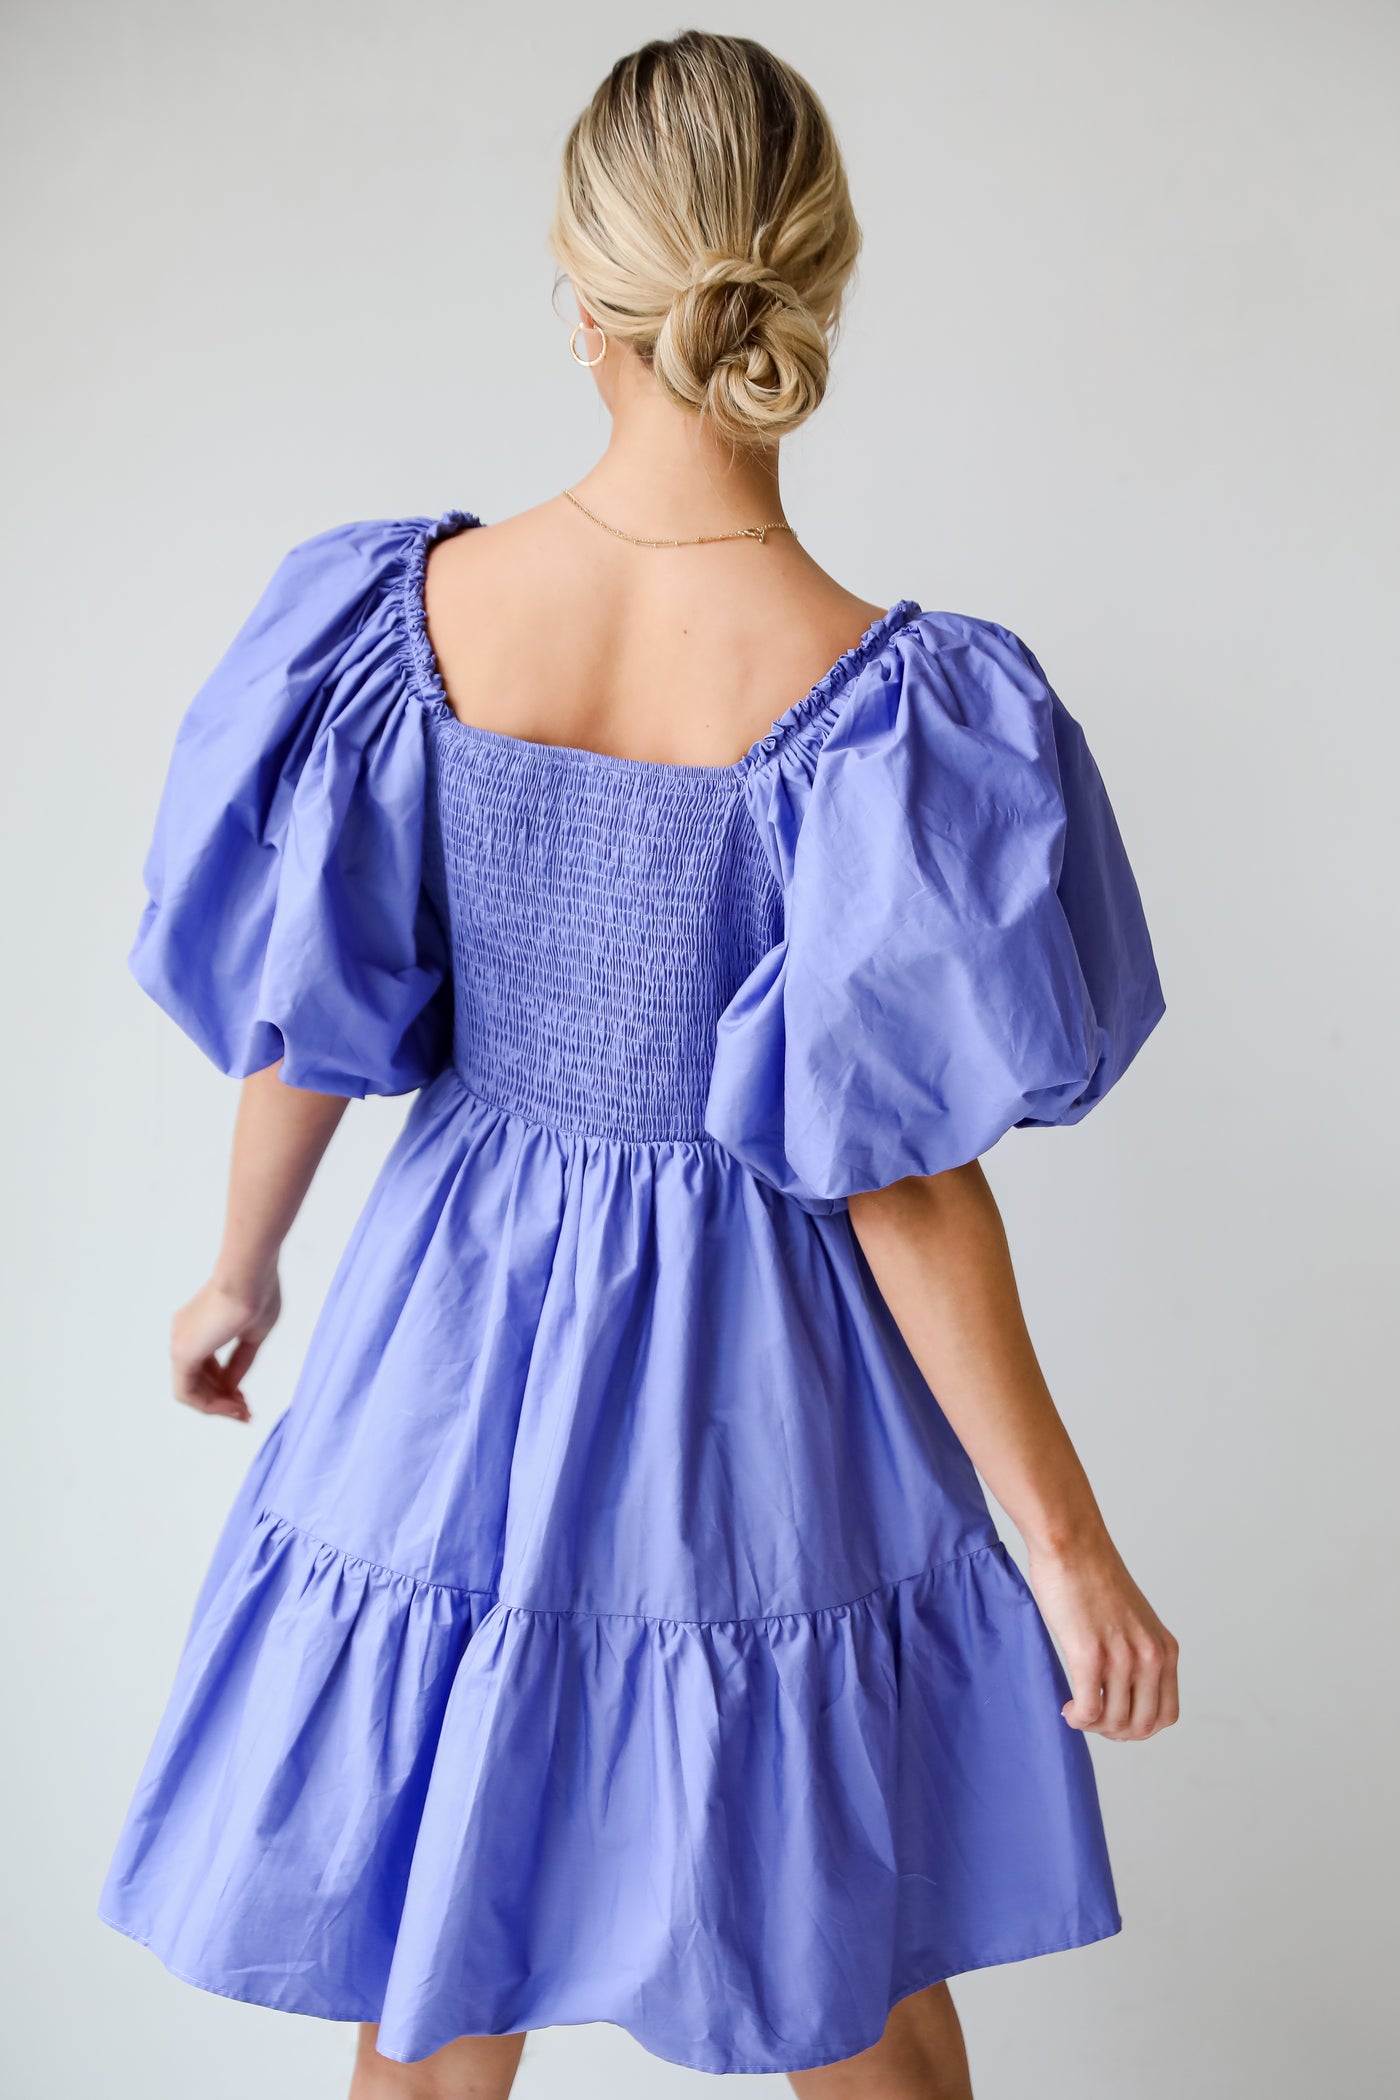 Dreamiest Darling Lilac Puff Sleeve Babydoll Mini Dress cute babydoll dress